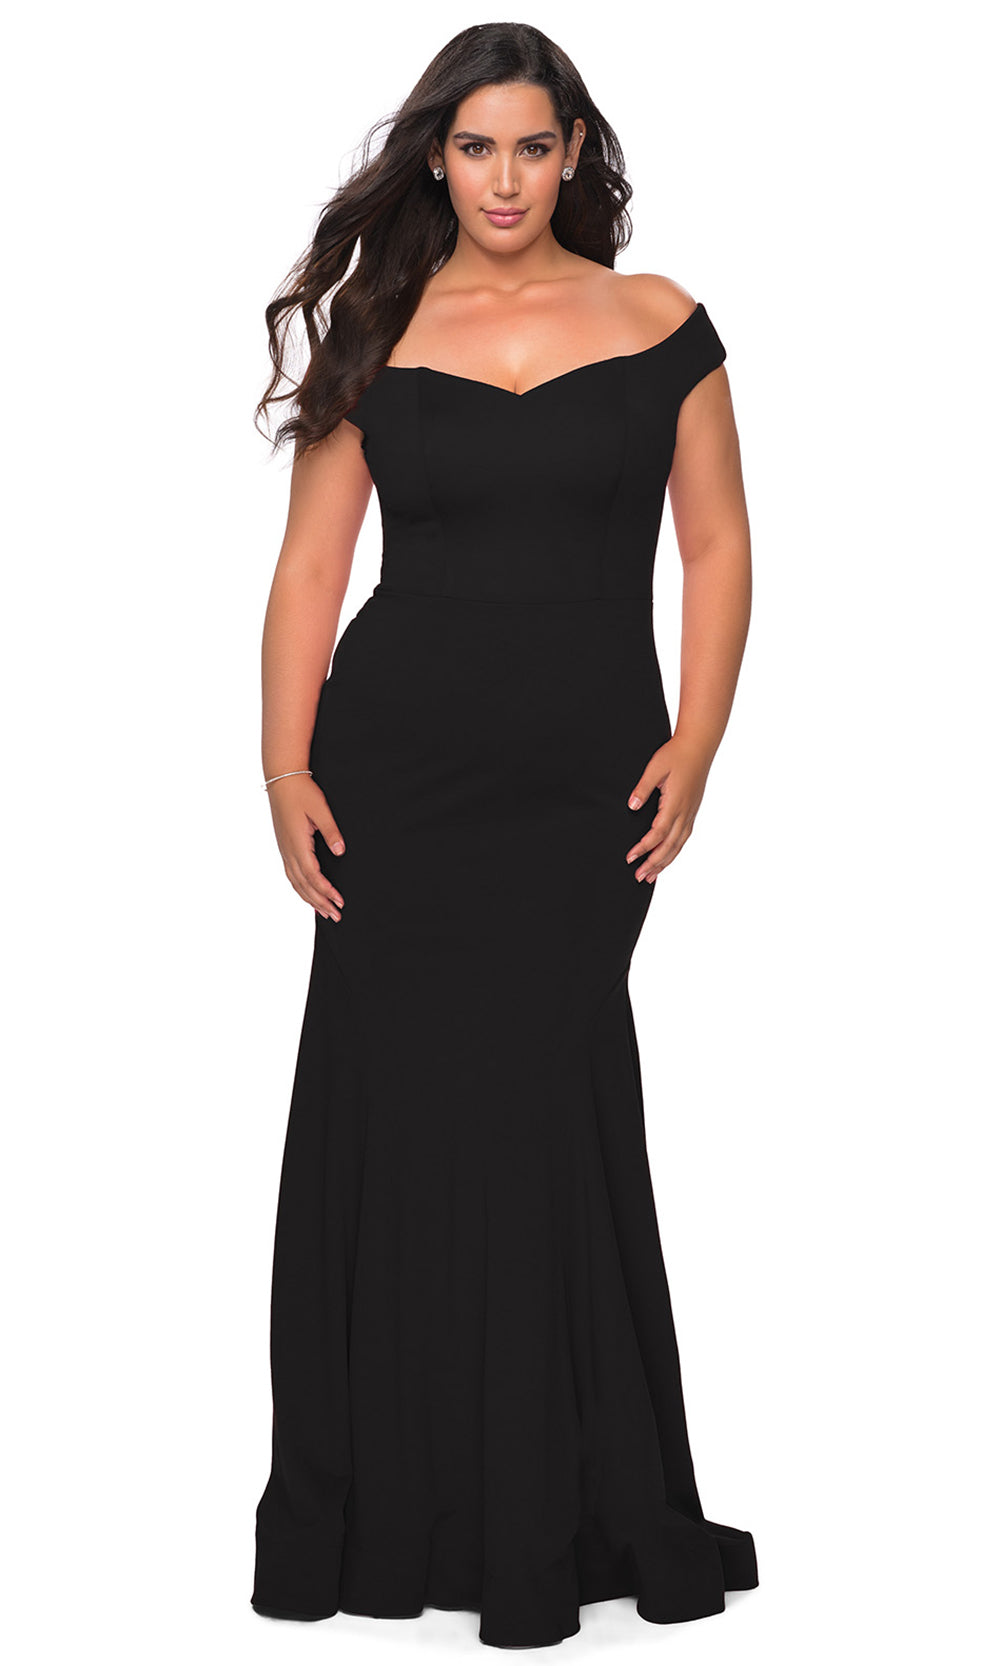 Black La Femme - 28963 Off Shoulder Bodice Jersey Dress | Long Trumpet ...